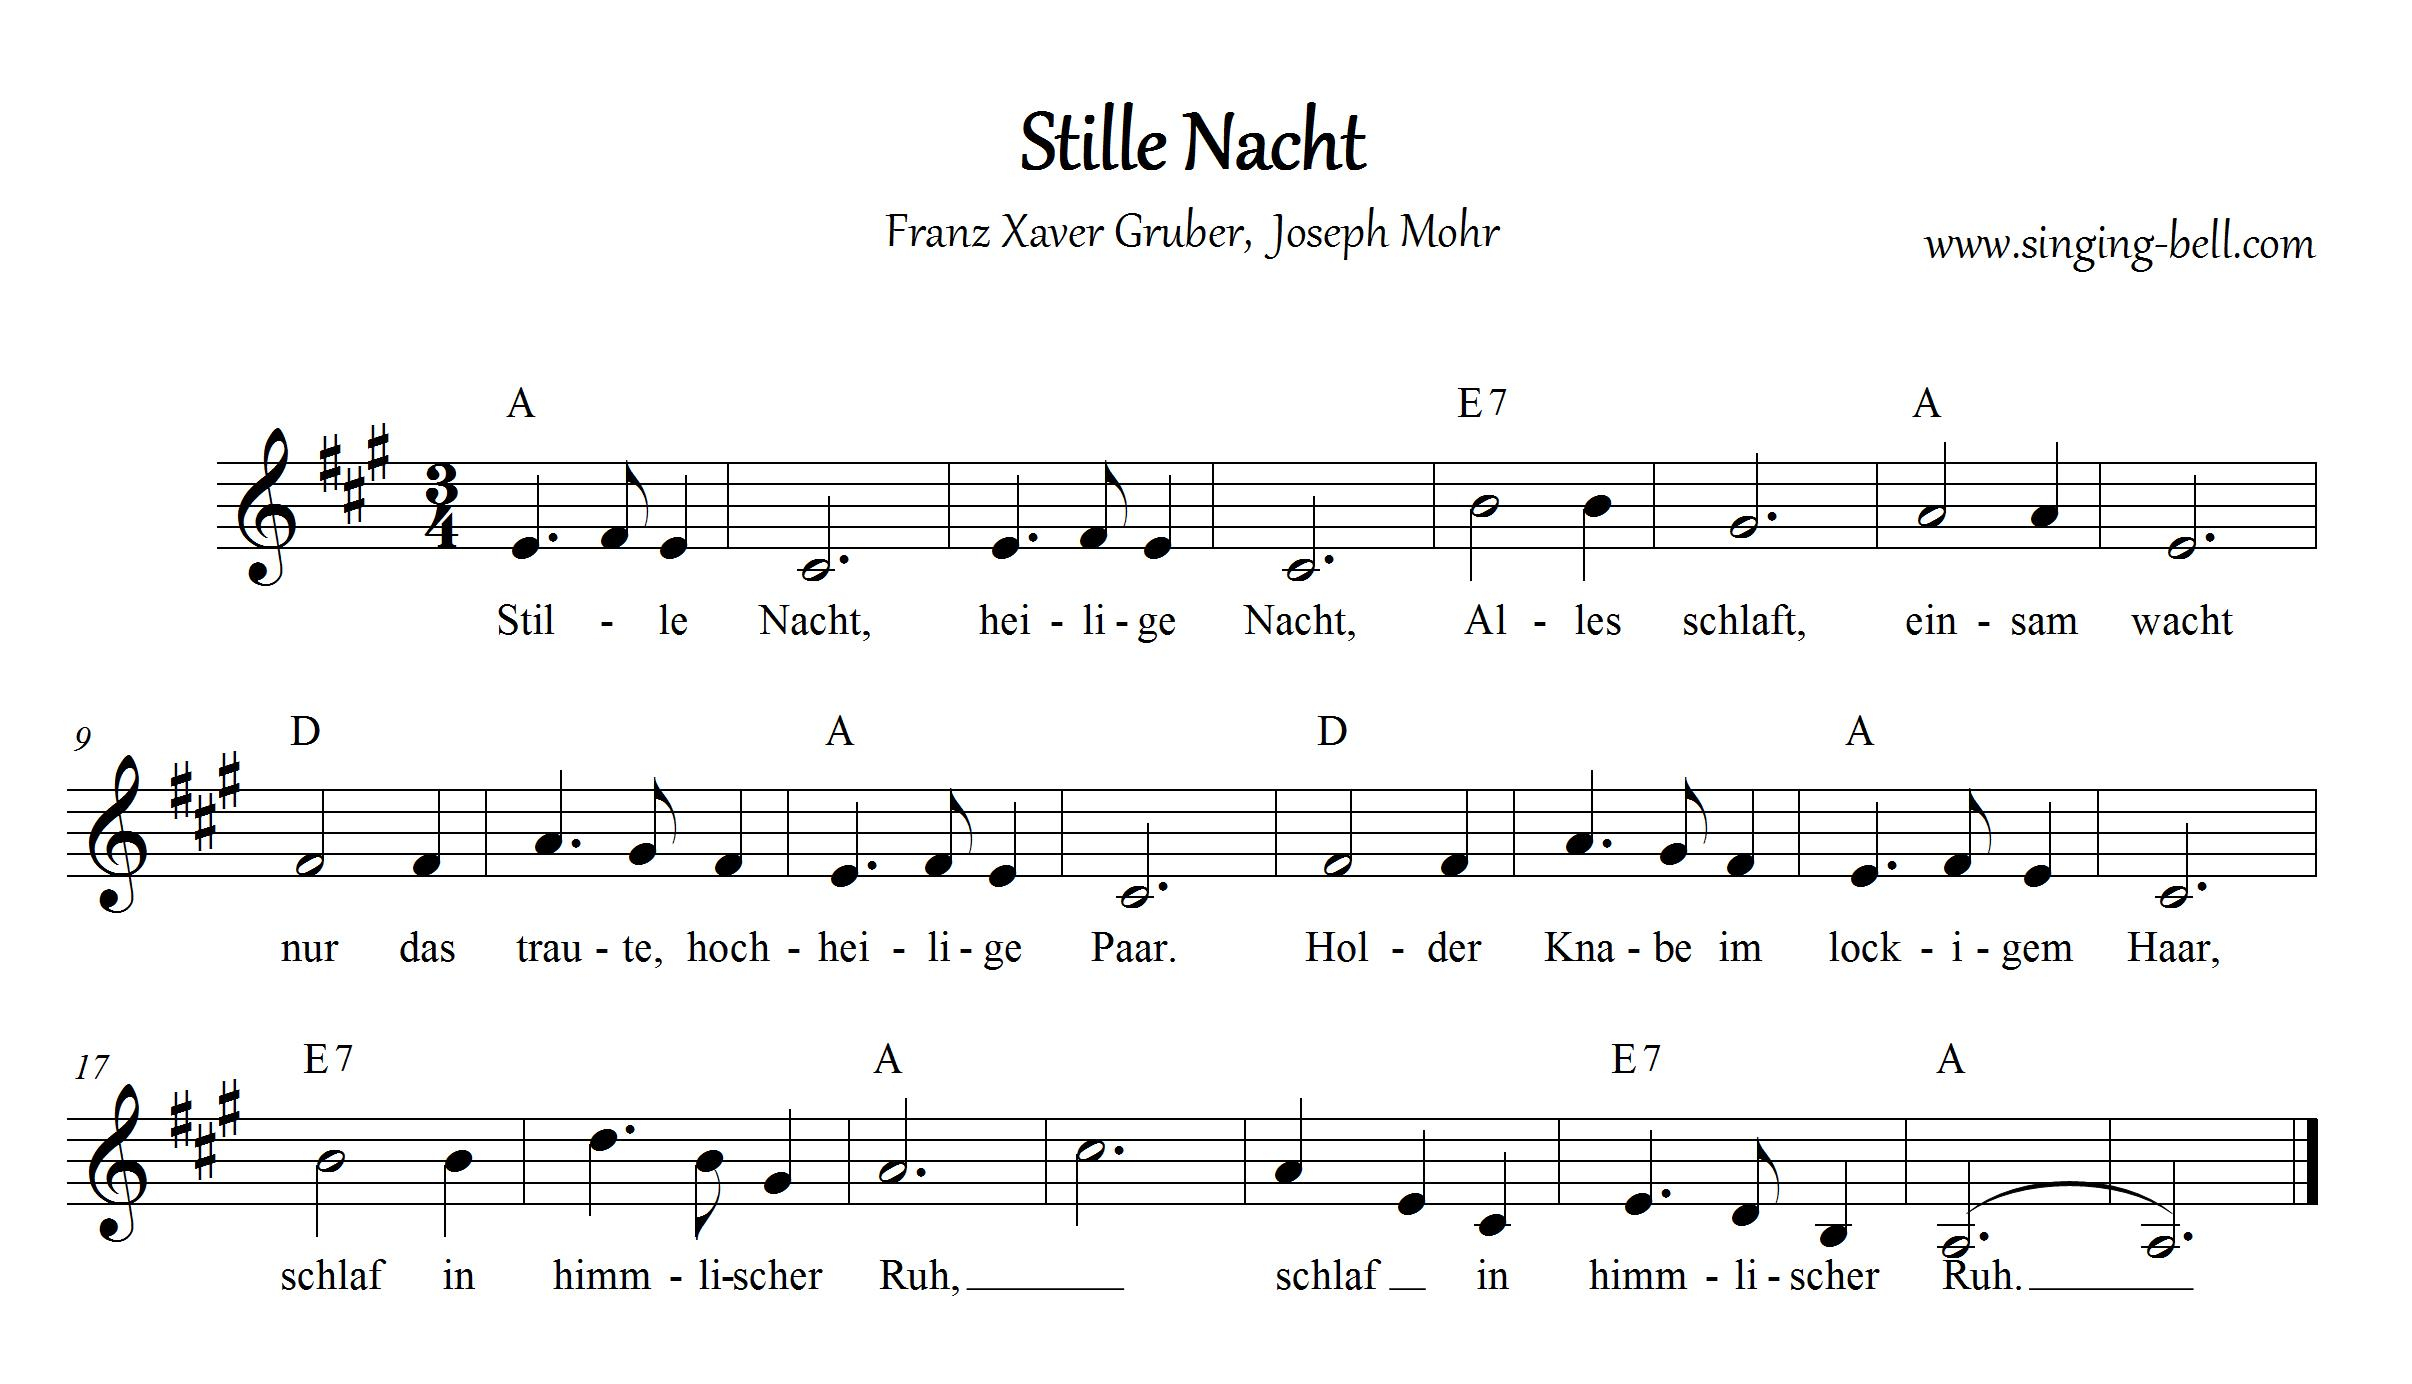 Stille Nacht, Heilige Nacht | Deutsche Weihnachtslieder mit Weihnachtslieder Stille Nacht Heilige Nacht Text